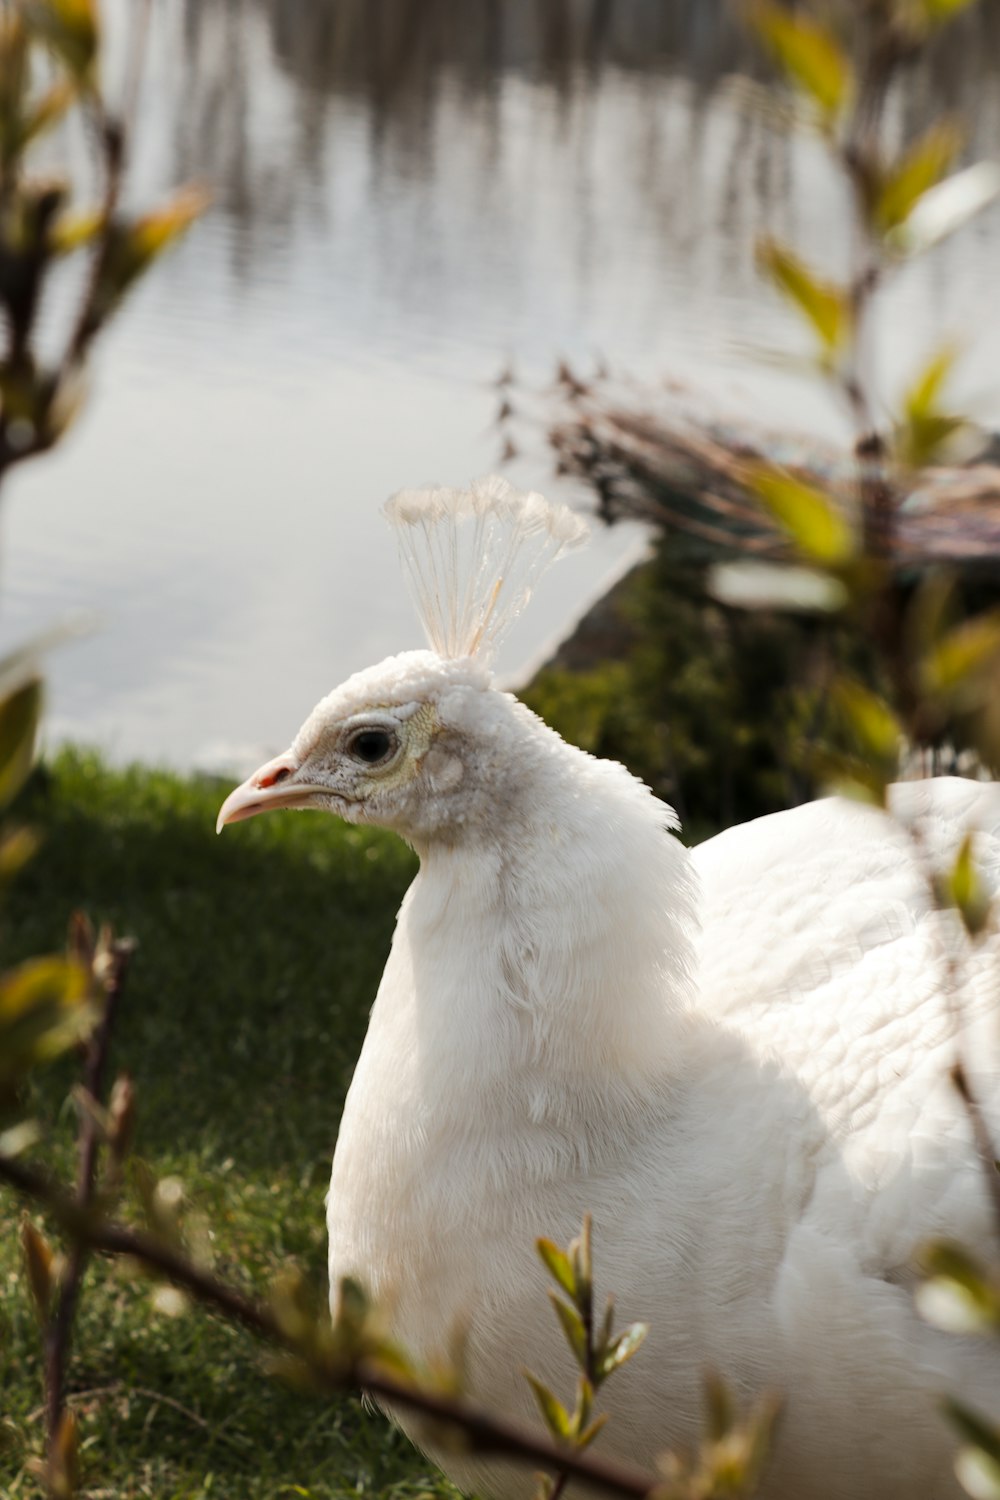 Un pájaro blanco parado en la hierba junto a un cuerpo de agua